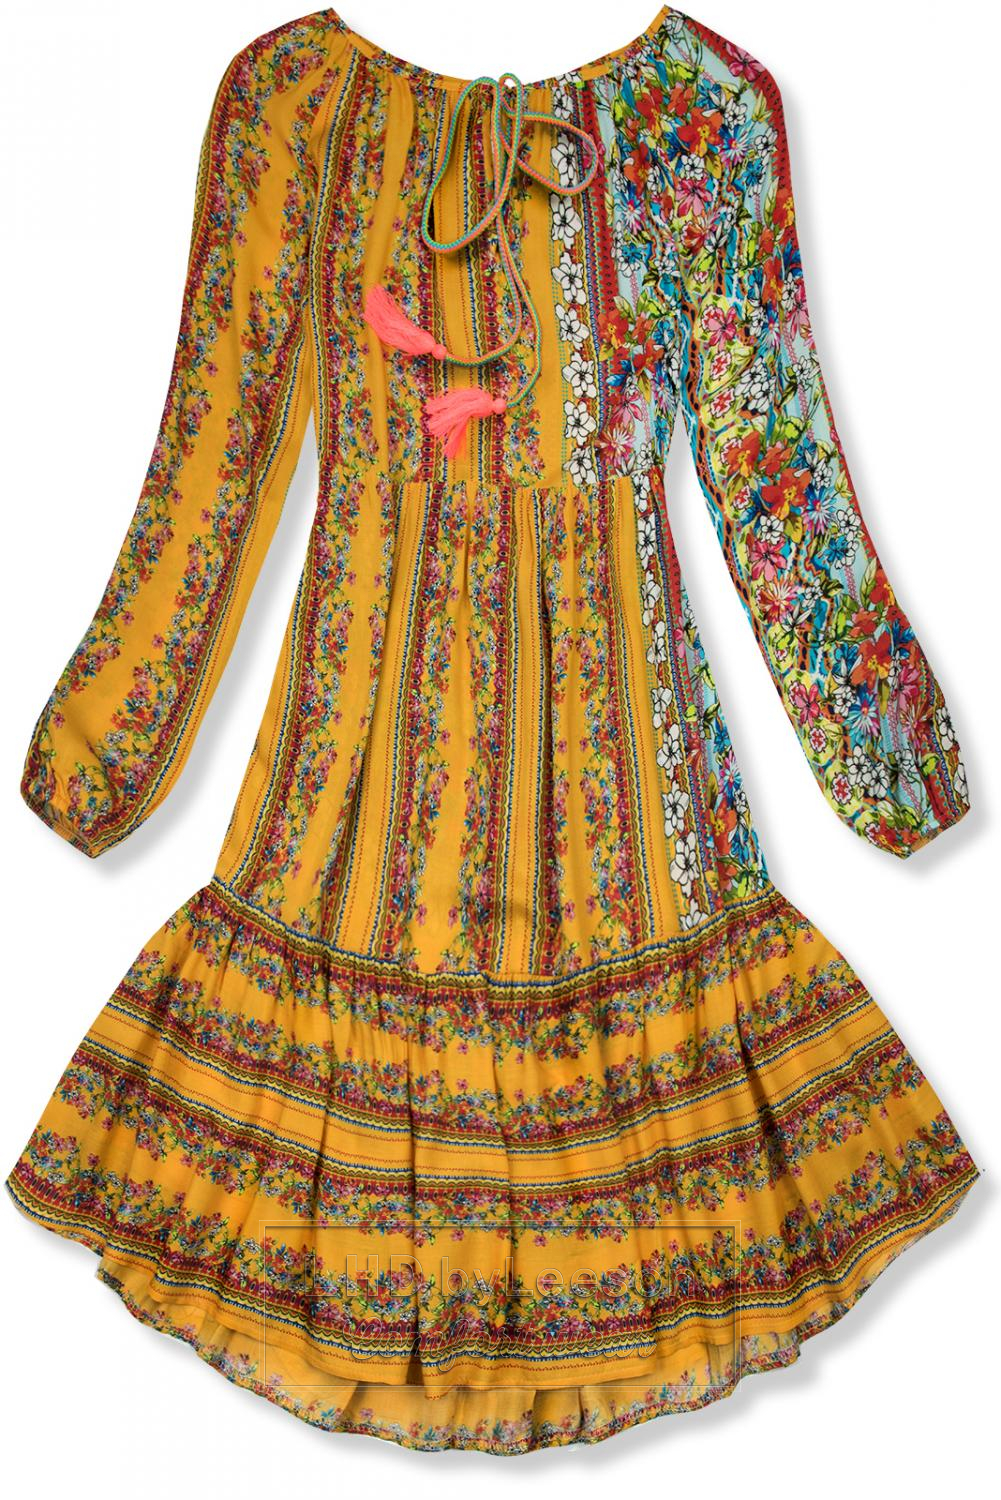 Musztardowa wzorzysta sukienka o luźnym kroju